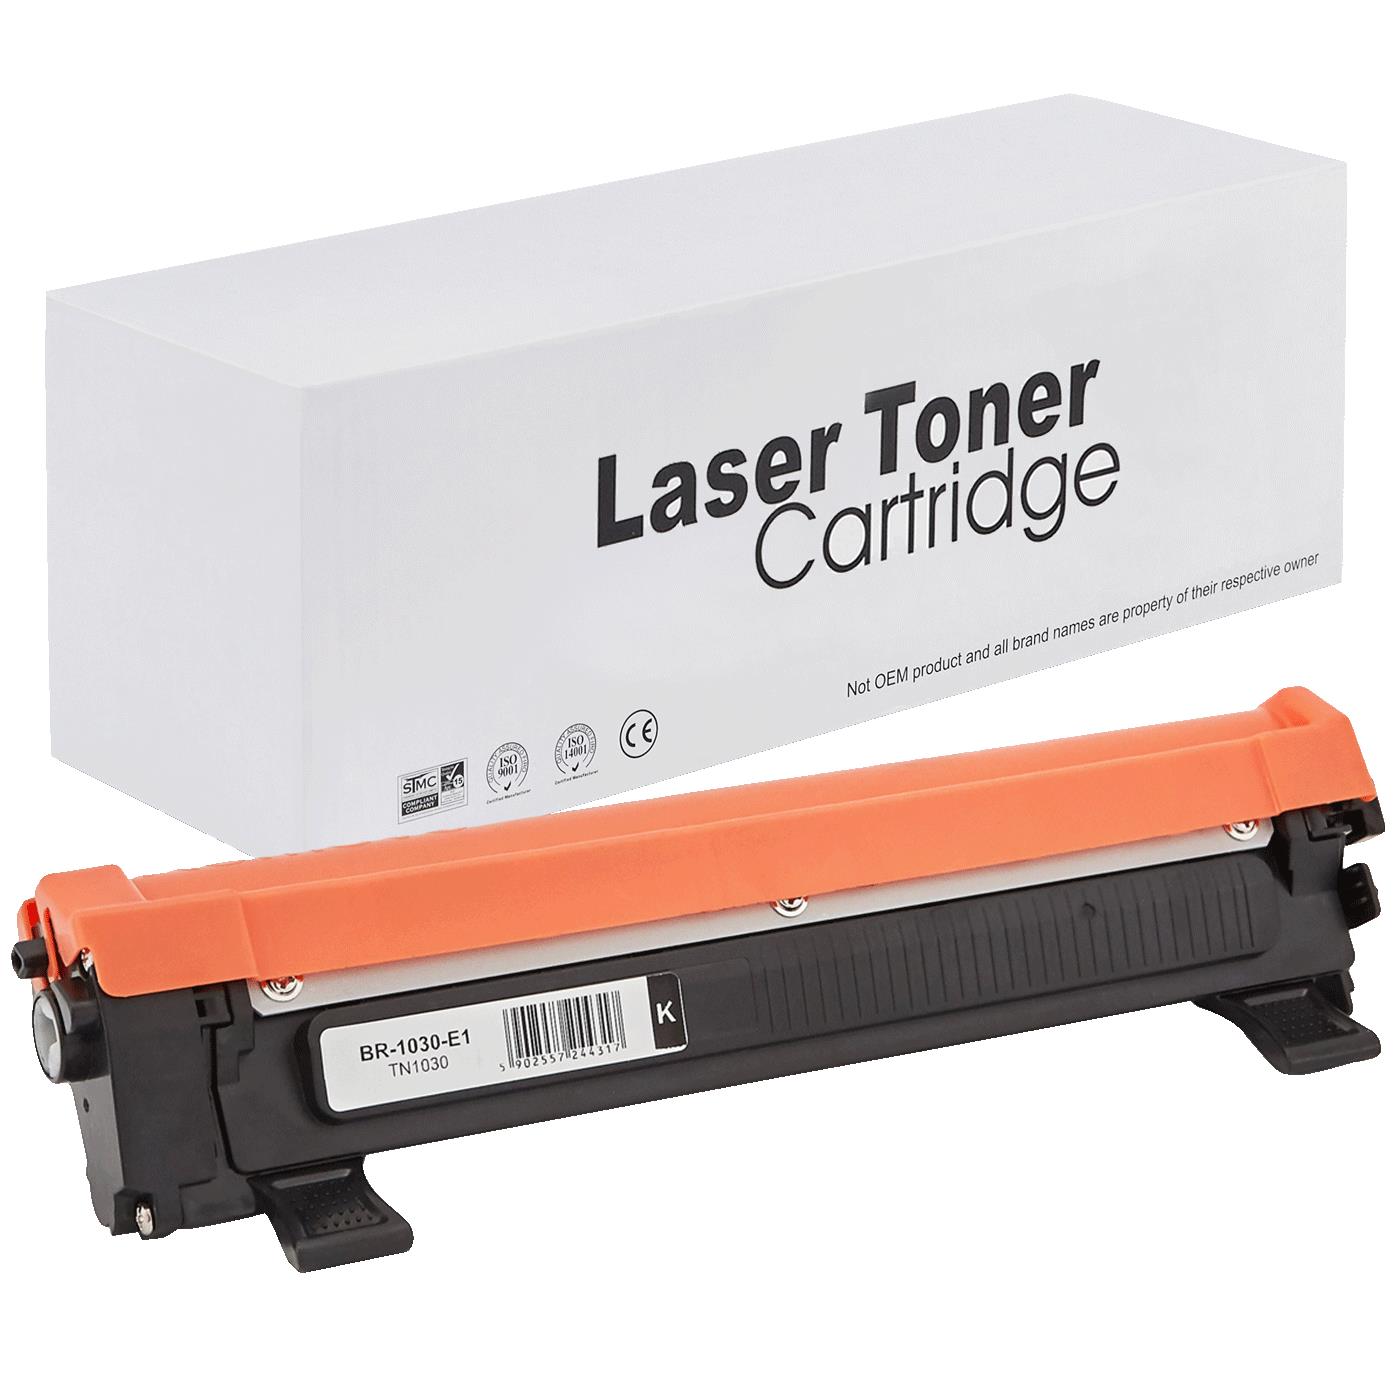 съвместима тонер касета за принтери и печатащи устройства на Brother 1202 Toner BR-1030 | TN1030 / TN1050 / TN-1030. Ниски цени, прецизно изпълнение, високо качество.